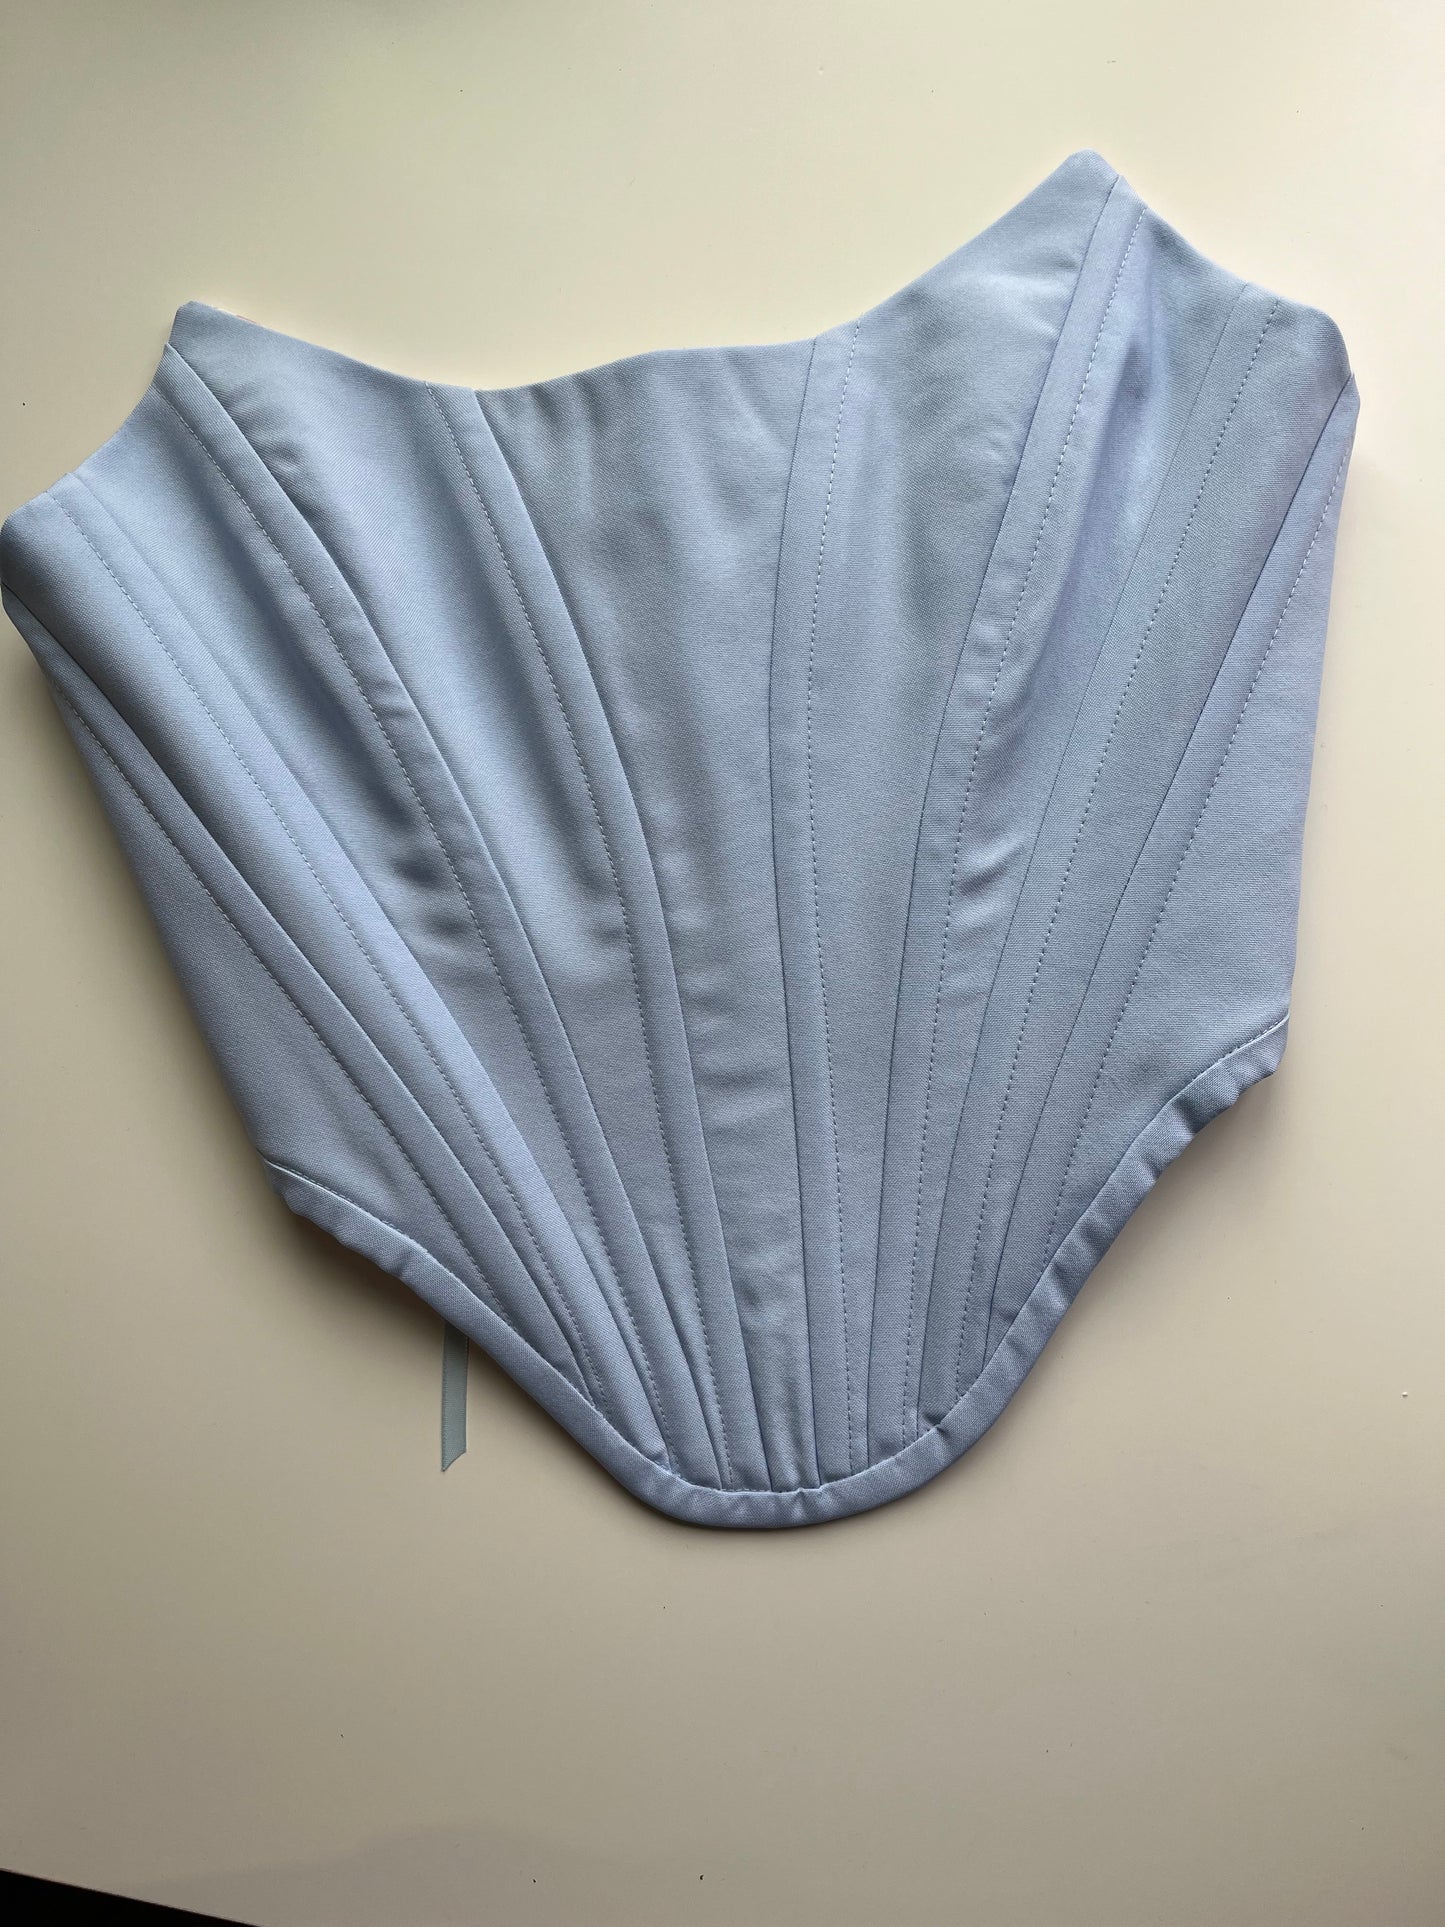 Sky blue corset, size M